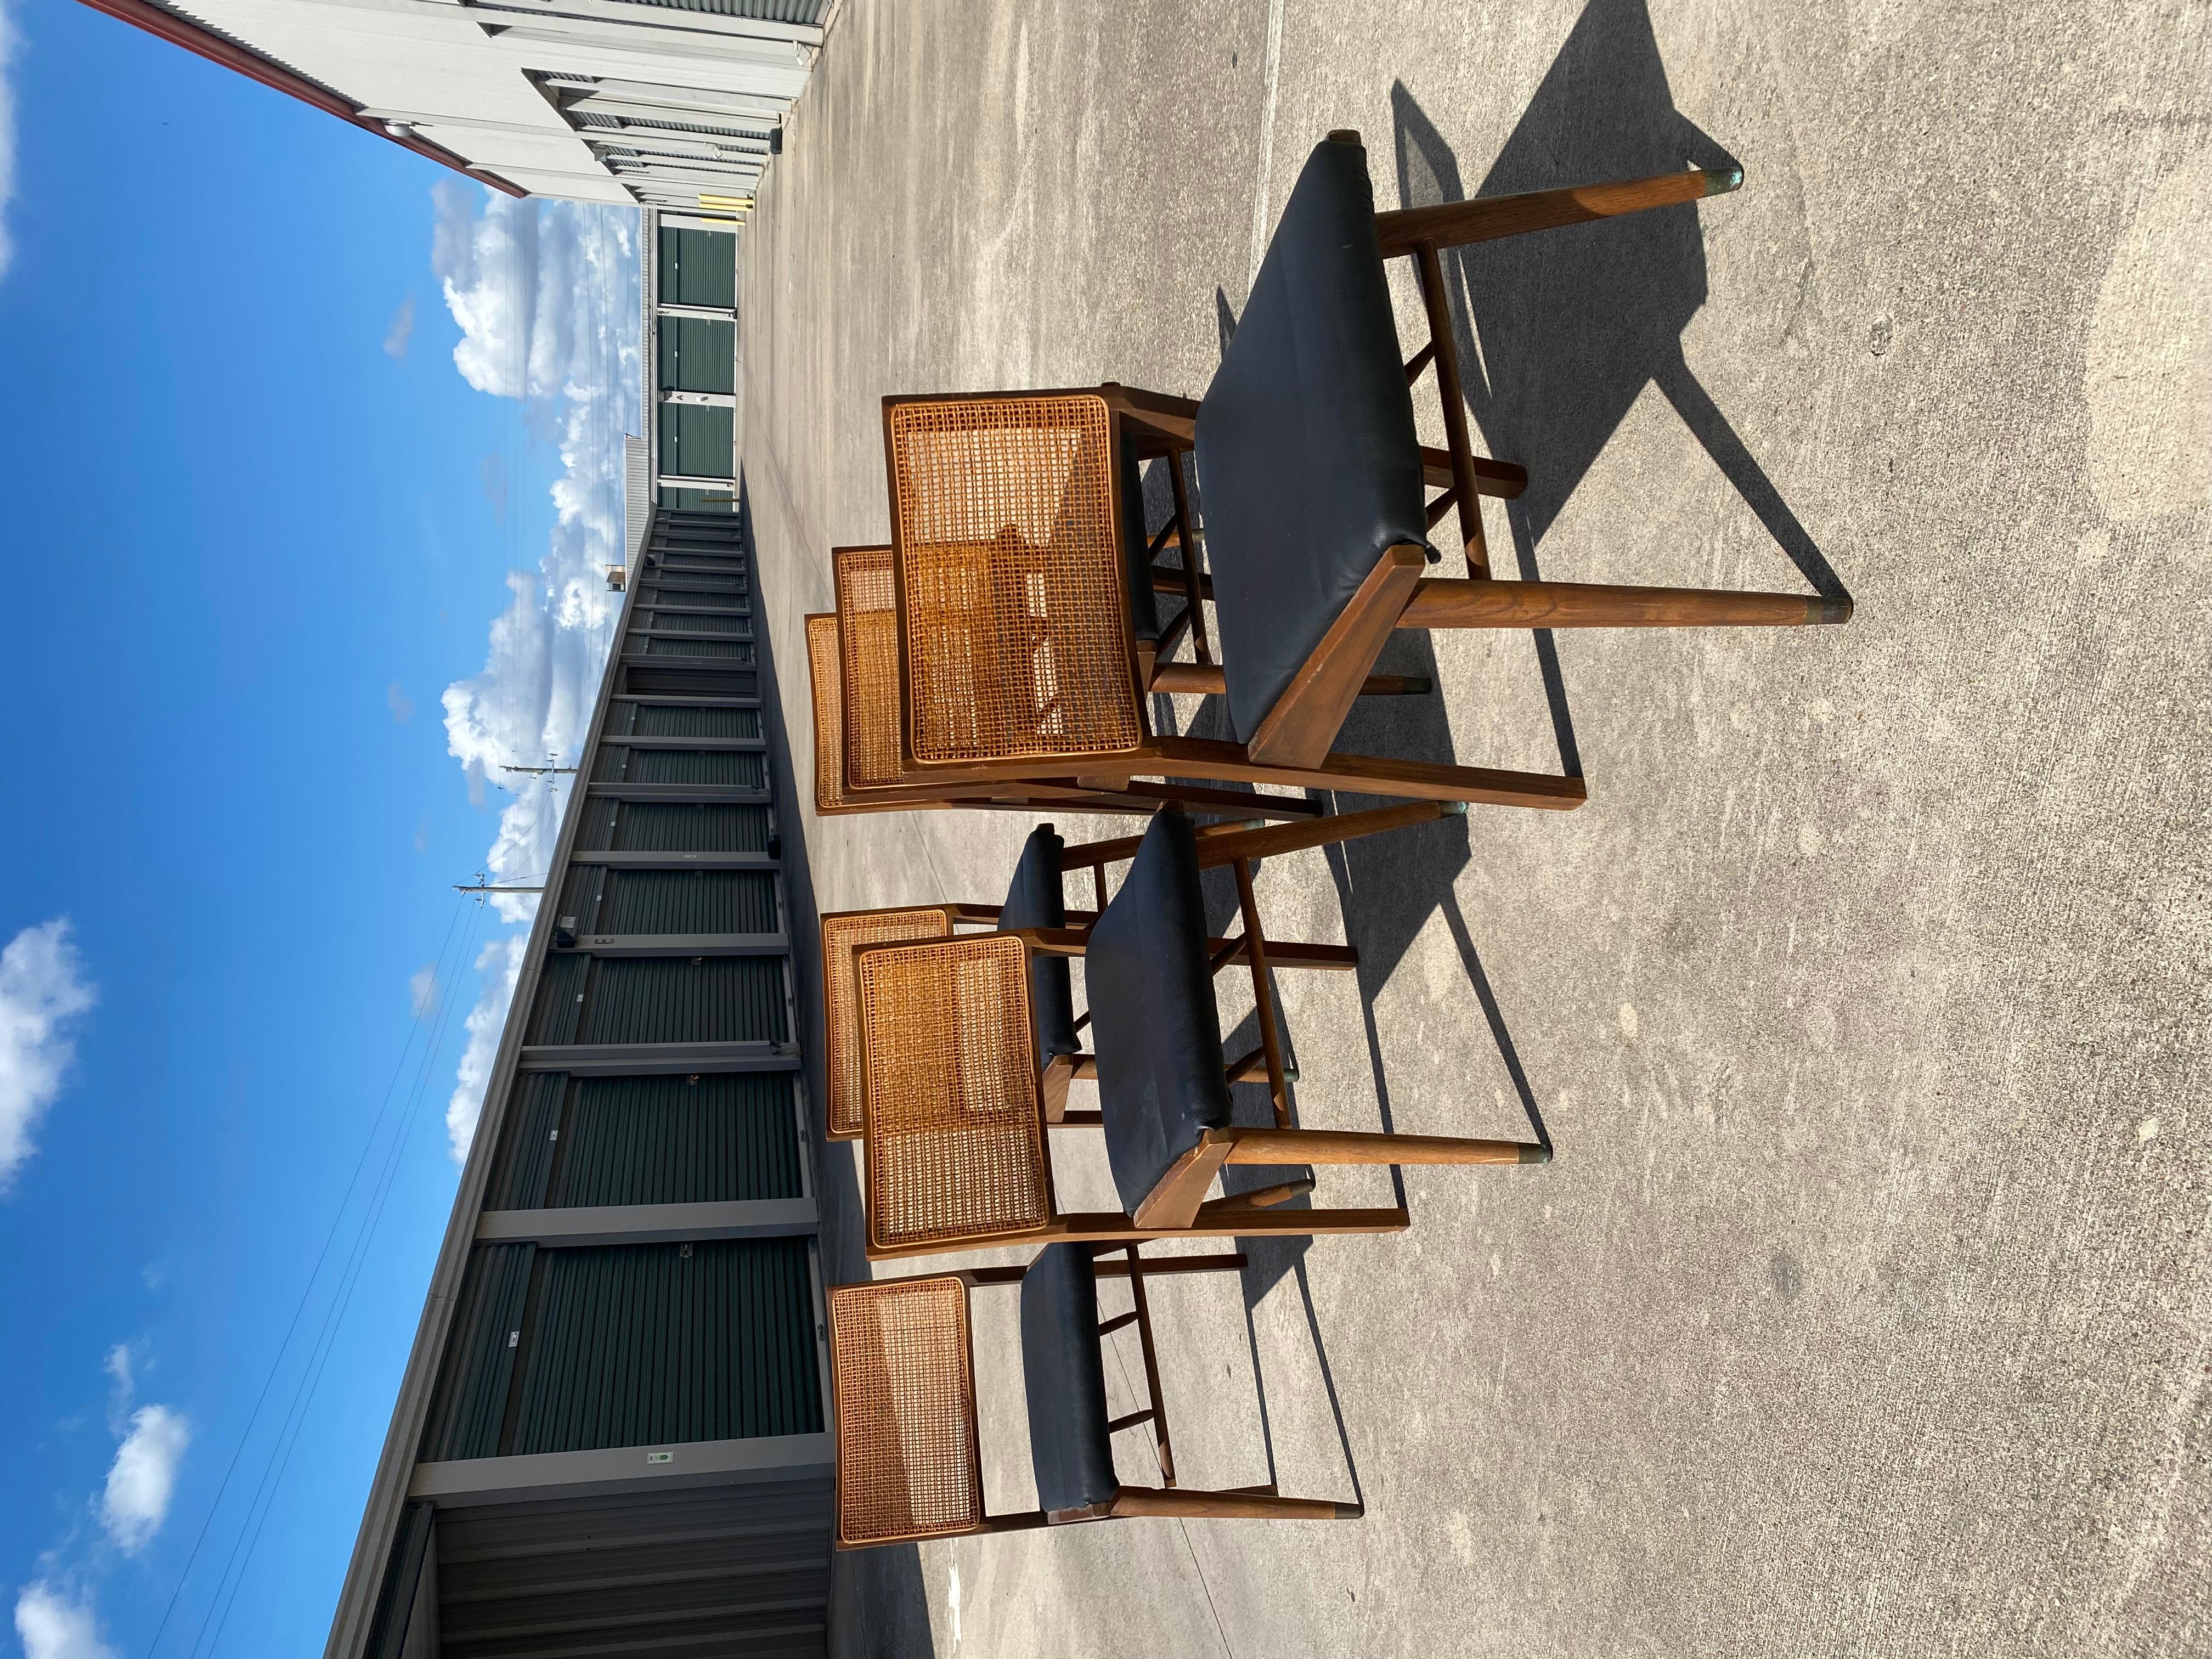 Un superbe ensemble de 6 pièces Holman Manufacturing Co. Chaises de salle à manger
Produit par une famille danoise établie à Pittsburgh, au Texas, vendu à des magasins de luxe dans tout le pays.
Chaises en bois de noyer, rotin, cuir avec pieds